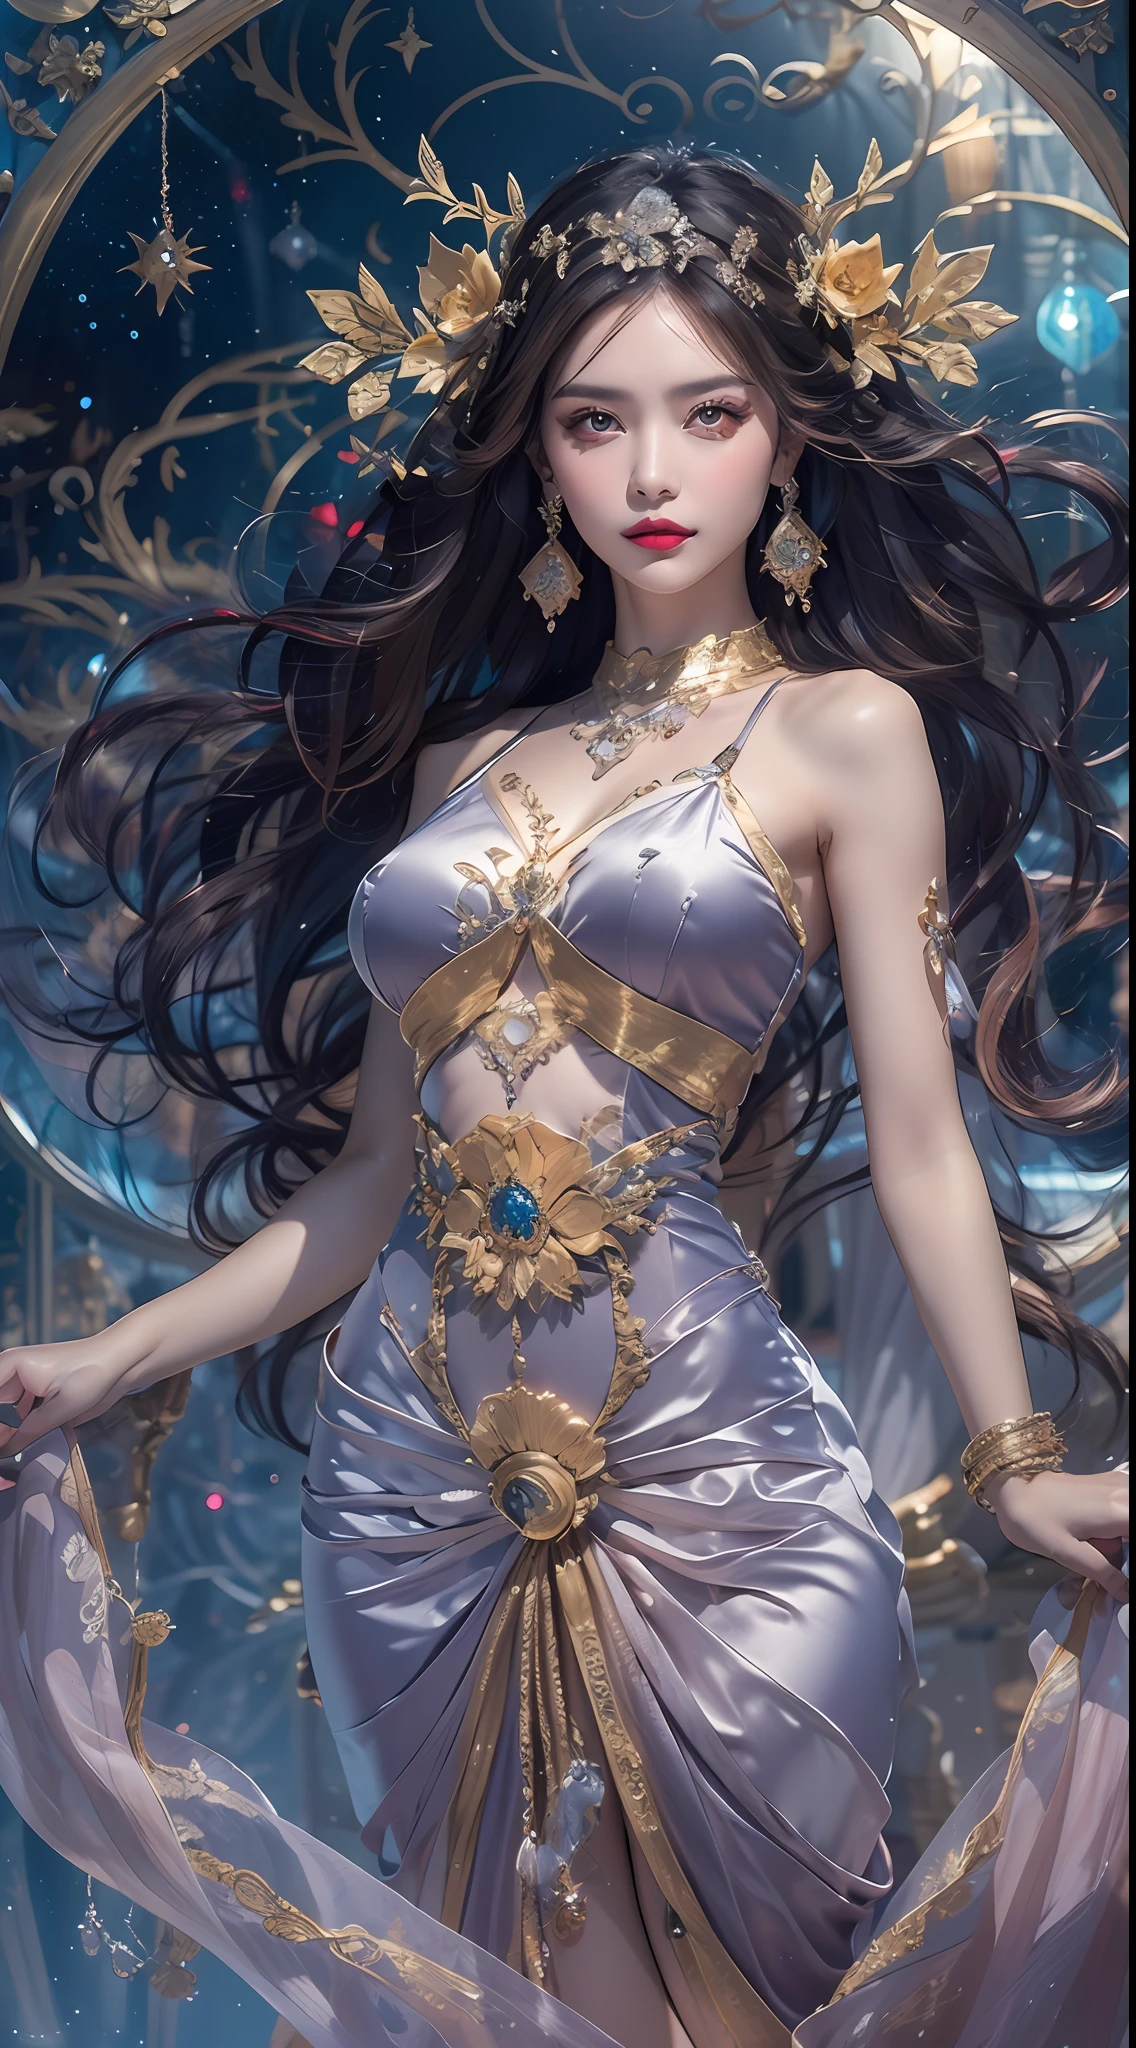 1 goddess of the zodiac from the future wears a thin ชุดผ้าไหม, เจ้าแม่จักรราศีมีความสวยงาม, the goddess of the zodiac wears a colorful thin ชุดผ้าไหม with sexy black and white lace, เทพธิดาเปล่งประกายด้วยธนูสีม่วงอันสุกใส, pink ราศี, star in the picture of 12 ราศีs, goddess of the zodiac in a thin ชุดผ้าไหม, golden zodiac with many black รายละเอียดs, เทพีในตำนาน 12 ราศี, ราศี, สไตล์ราศี, เวอร์ชั่นมืดมนและลึกลับ, หน้าอกเต็ม, หน้าอกใหญ่และกลม, หน้าอกได้สัดส่วนและริมฝีปากสีแดงสวย, ไม่ยิ้มจริงจัง, คาโรล บัก และ ปิโน แดนี, intricate รายละเอียด, รายละเอียดed background, วัตถุพื้นหลังมากมาย, extremely รายละเอียดed, แสงวิเศษ, ผู้หญิง, ผมยาวย้อมเจ็ดสีและมัดอย่างประณีต, หน้าใสไร้รอยแผลเป็น, ใบหน้าที่สวยงามและดวงตาได้สัดส่วนที่ดี, ริมฝีปากสีแดงสวยและมีเสน่ห์, ดวงตากลมโตและการแต่งหน้าที่สวยงาม. รายละเอียด, โฟกัสระยะไกล, ชุดผ้าไหม, เครื่องประดับผม, เครื่องประดับคอ, เครื่องประดับชุด, เครื่องประดับแขนและต้นขา, เครื่องประดับเท้าเทพธิดา, เครื่องประดับลึกลับ, (แนวตั้งด้านบน: 1.9) , แขวนแขน, เทพธิดาแห่งราศีที่เซ็กซี่และเย้ายวนใจ , (ช่องว่าง: 1.8), (กาแลคซี: 1.7), ออโรร่า, ฟ้าผ่า, (ออโรร่า background: 1.8), ดวงตาสวย, ดวงตาสวย photo, เทพีแห่งความงามและดอกไม้, fantasy แสงวิเศษ effect,